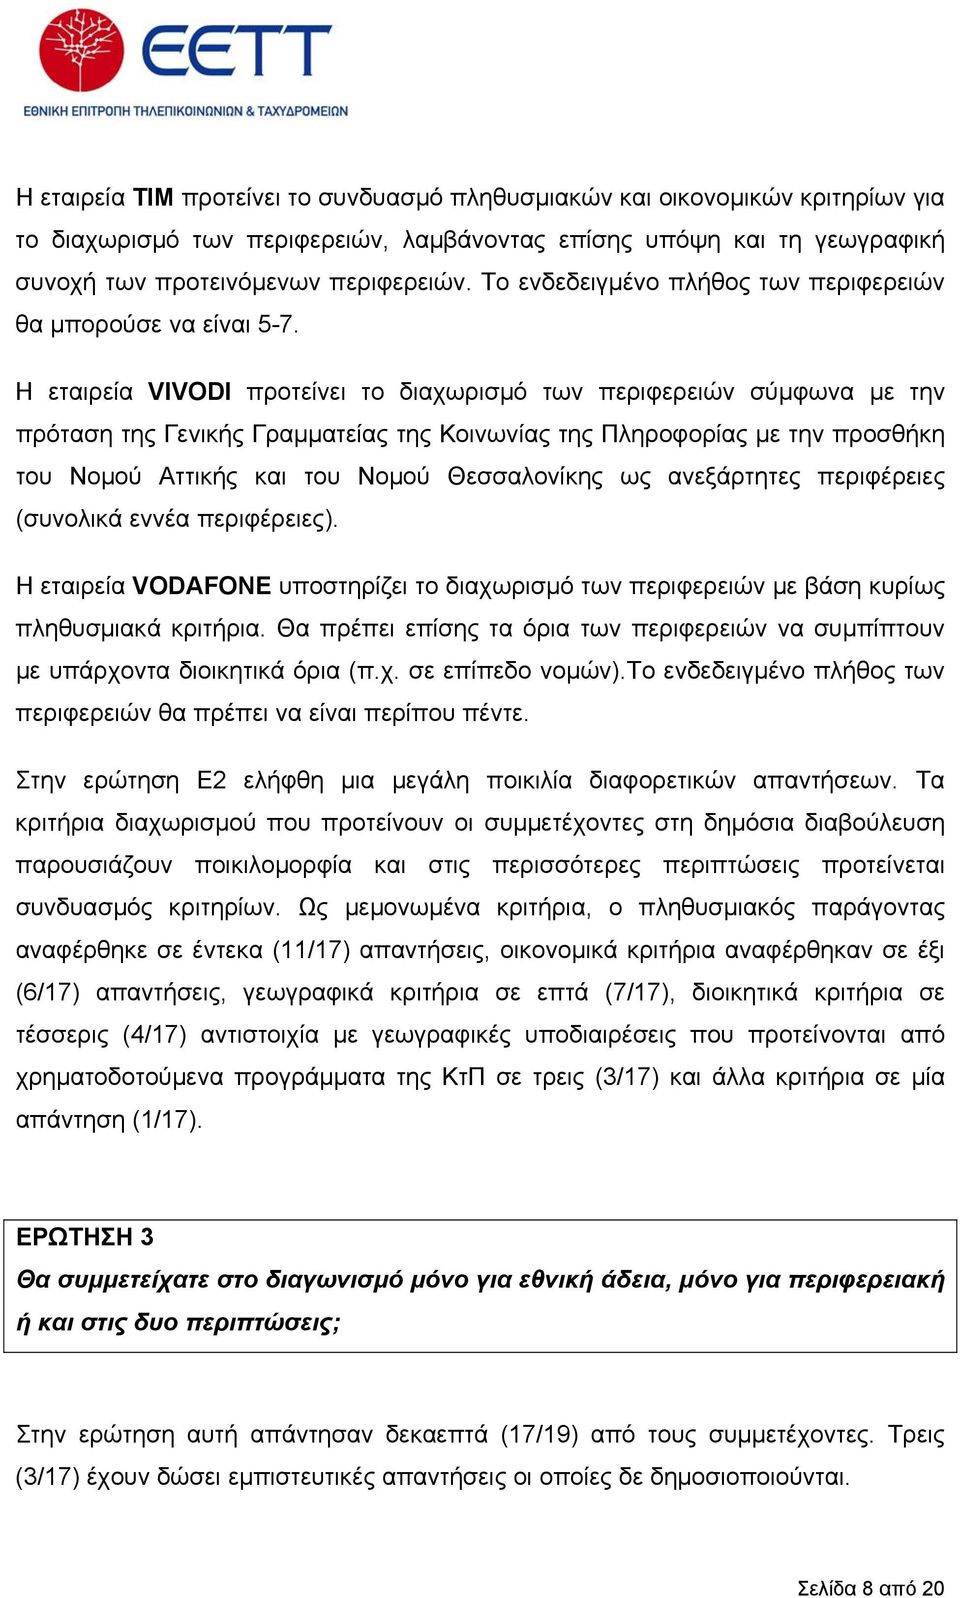 Η εταιρεία VIVODI προτείνει το διαχωρισµό των περιφερειών σύµφωνα µε την πρόταση της Γενικής Γραµµατείας της Κοινωνίας της Πληροφορίας µε την προσθήκη του Νοµού Αττικής και του Νοµού Θεσσαλονίκης ως